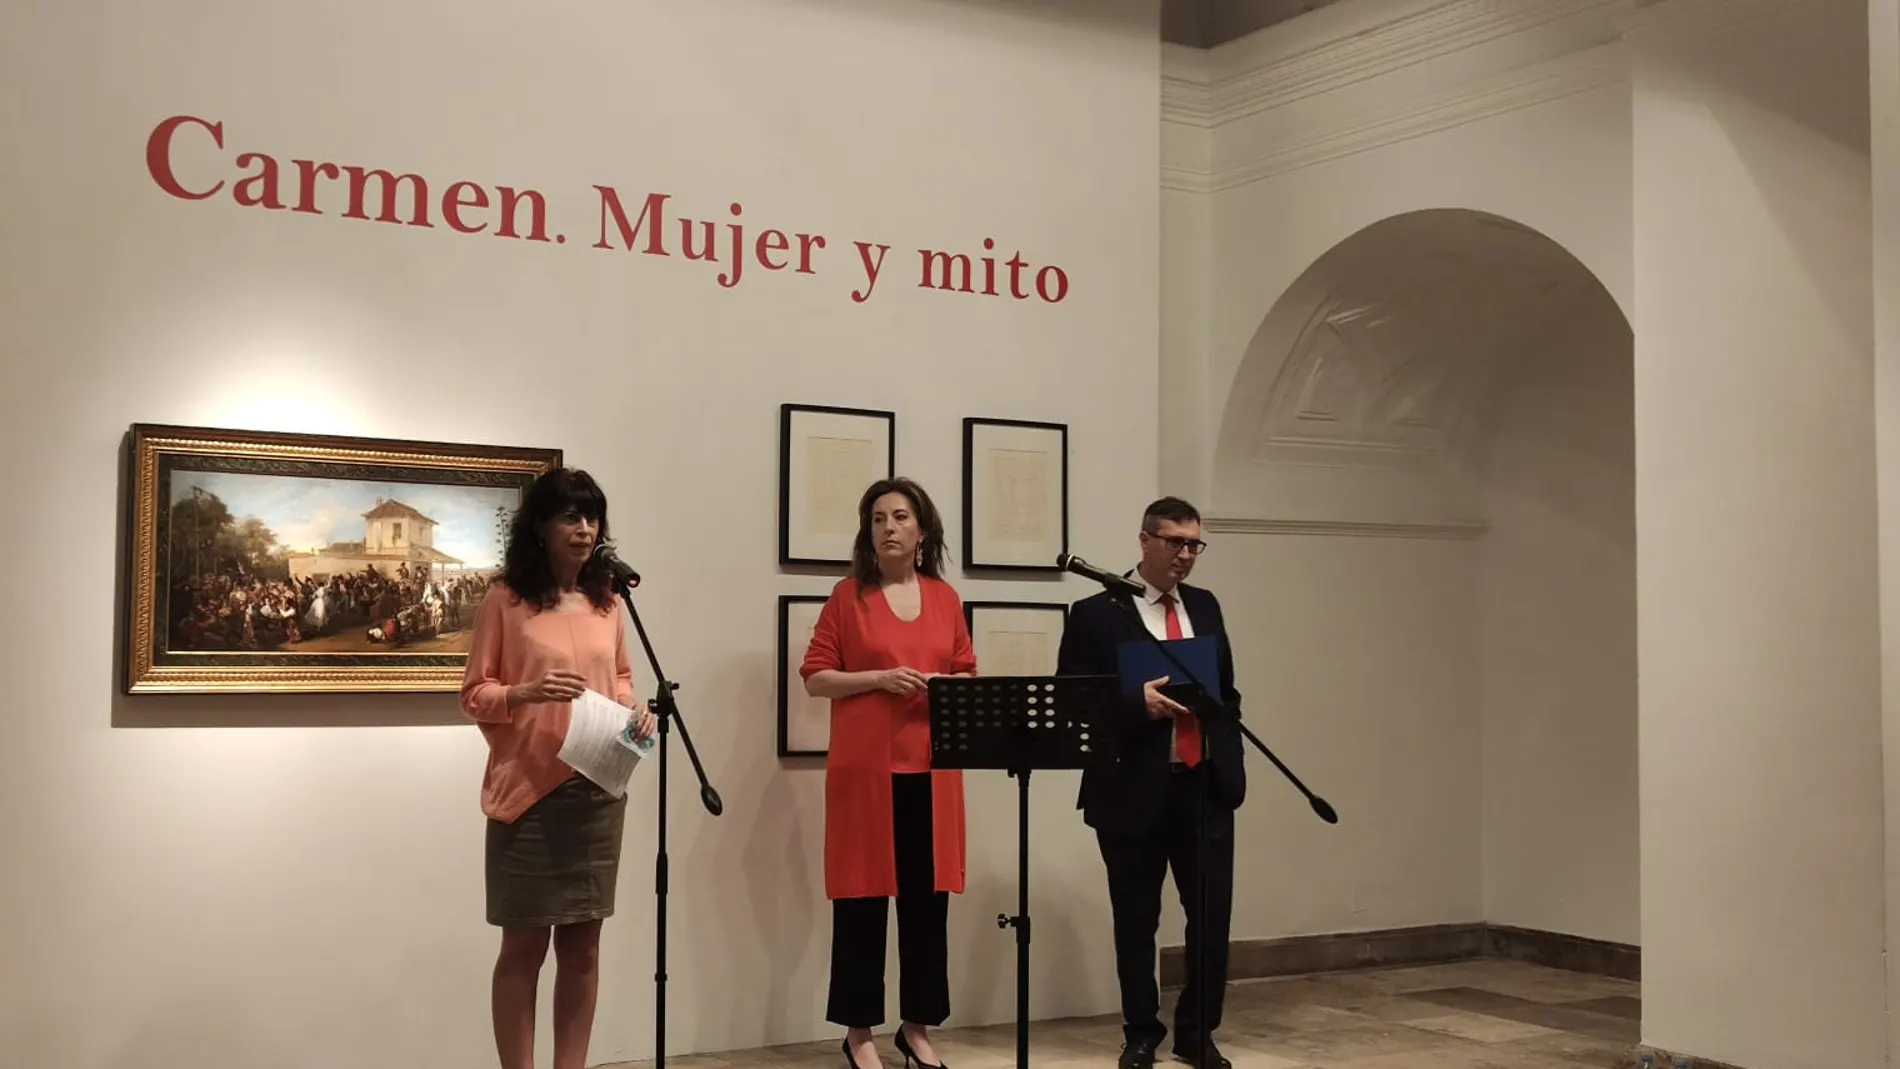 La concejala de Cultura y Turismo del Ayuntamiento de Valladolid, Ana Redondo, presenta la muestra "Carmen. Mujer y mito"